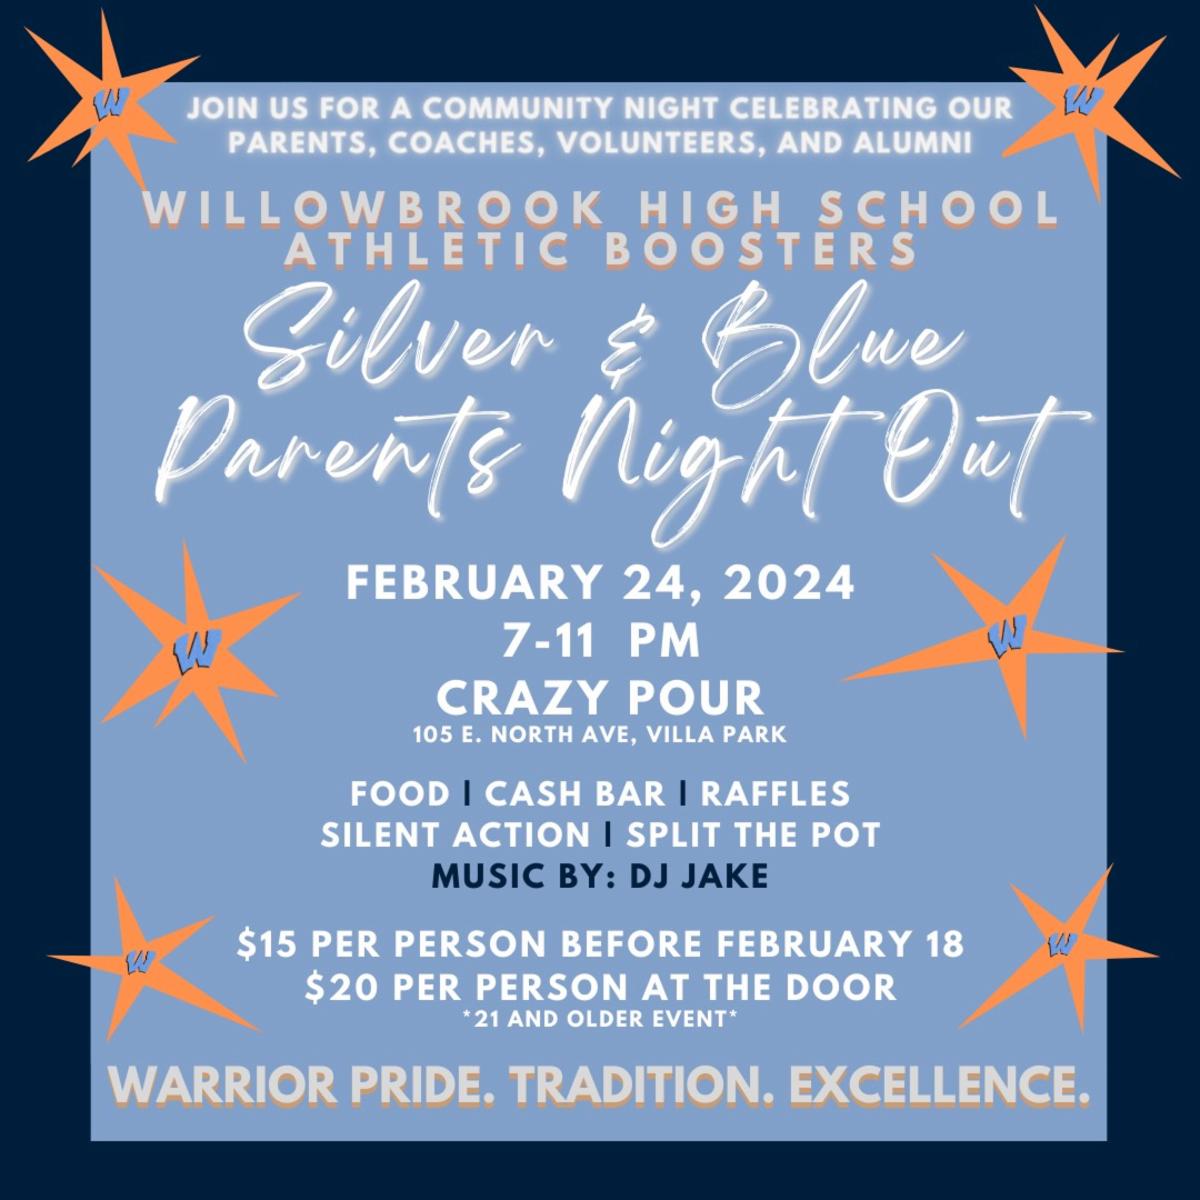 El 24 de febrero, @WillowbrookAth1 organizará una “Noche de padres plateada y azul” para celebrar la dedicación y los esfuerzos de los padres de @WillowbrookHS1 y agradecerles por todo lo que hacen para apoyar a la escuela. Vea detalles importantes en dupage88.net/site/page/15982.